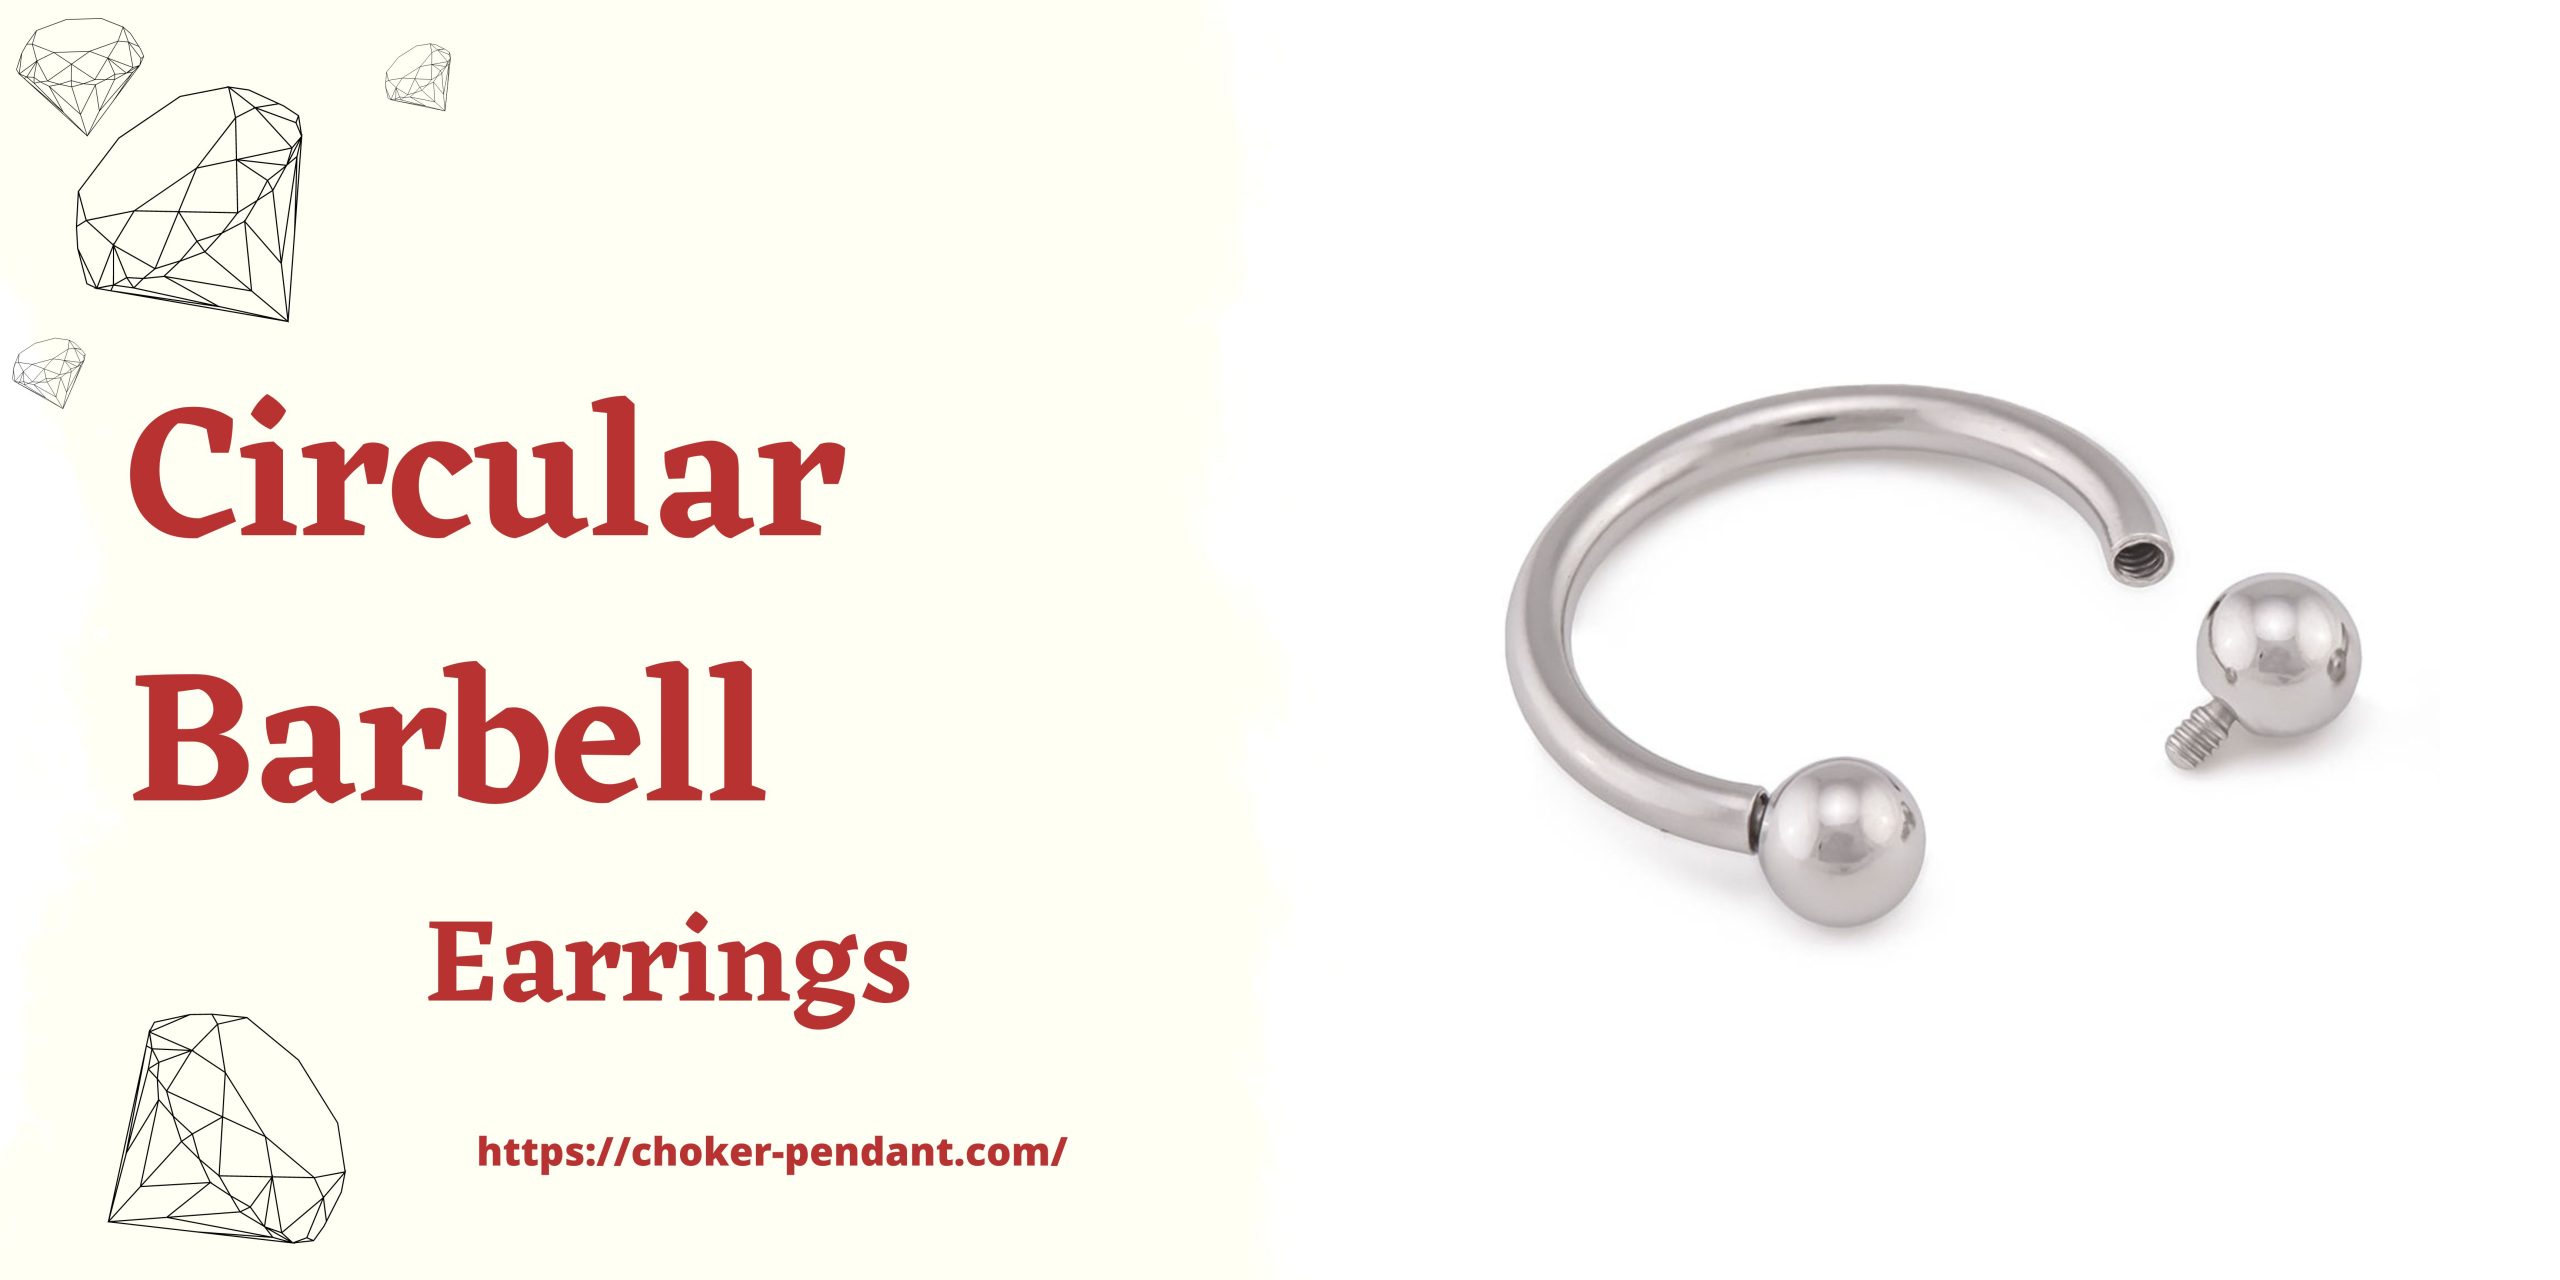 Circular Barbell earrings